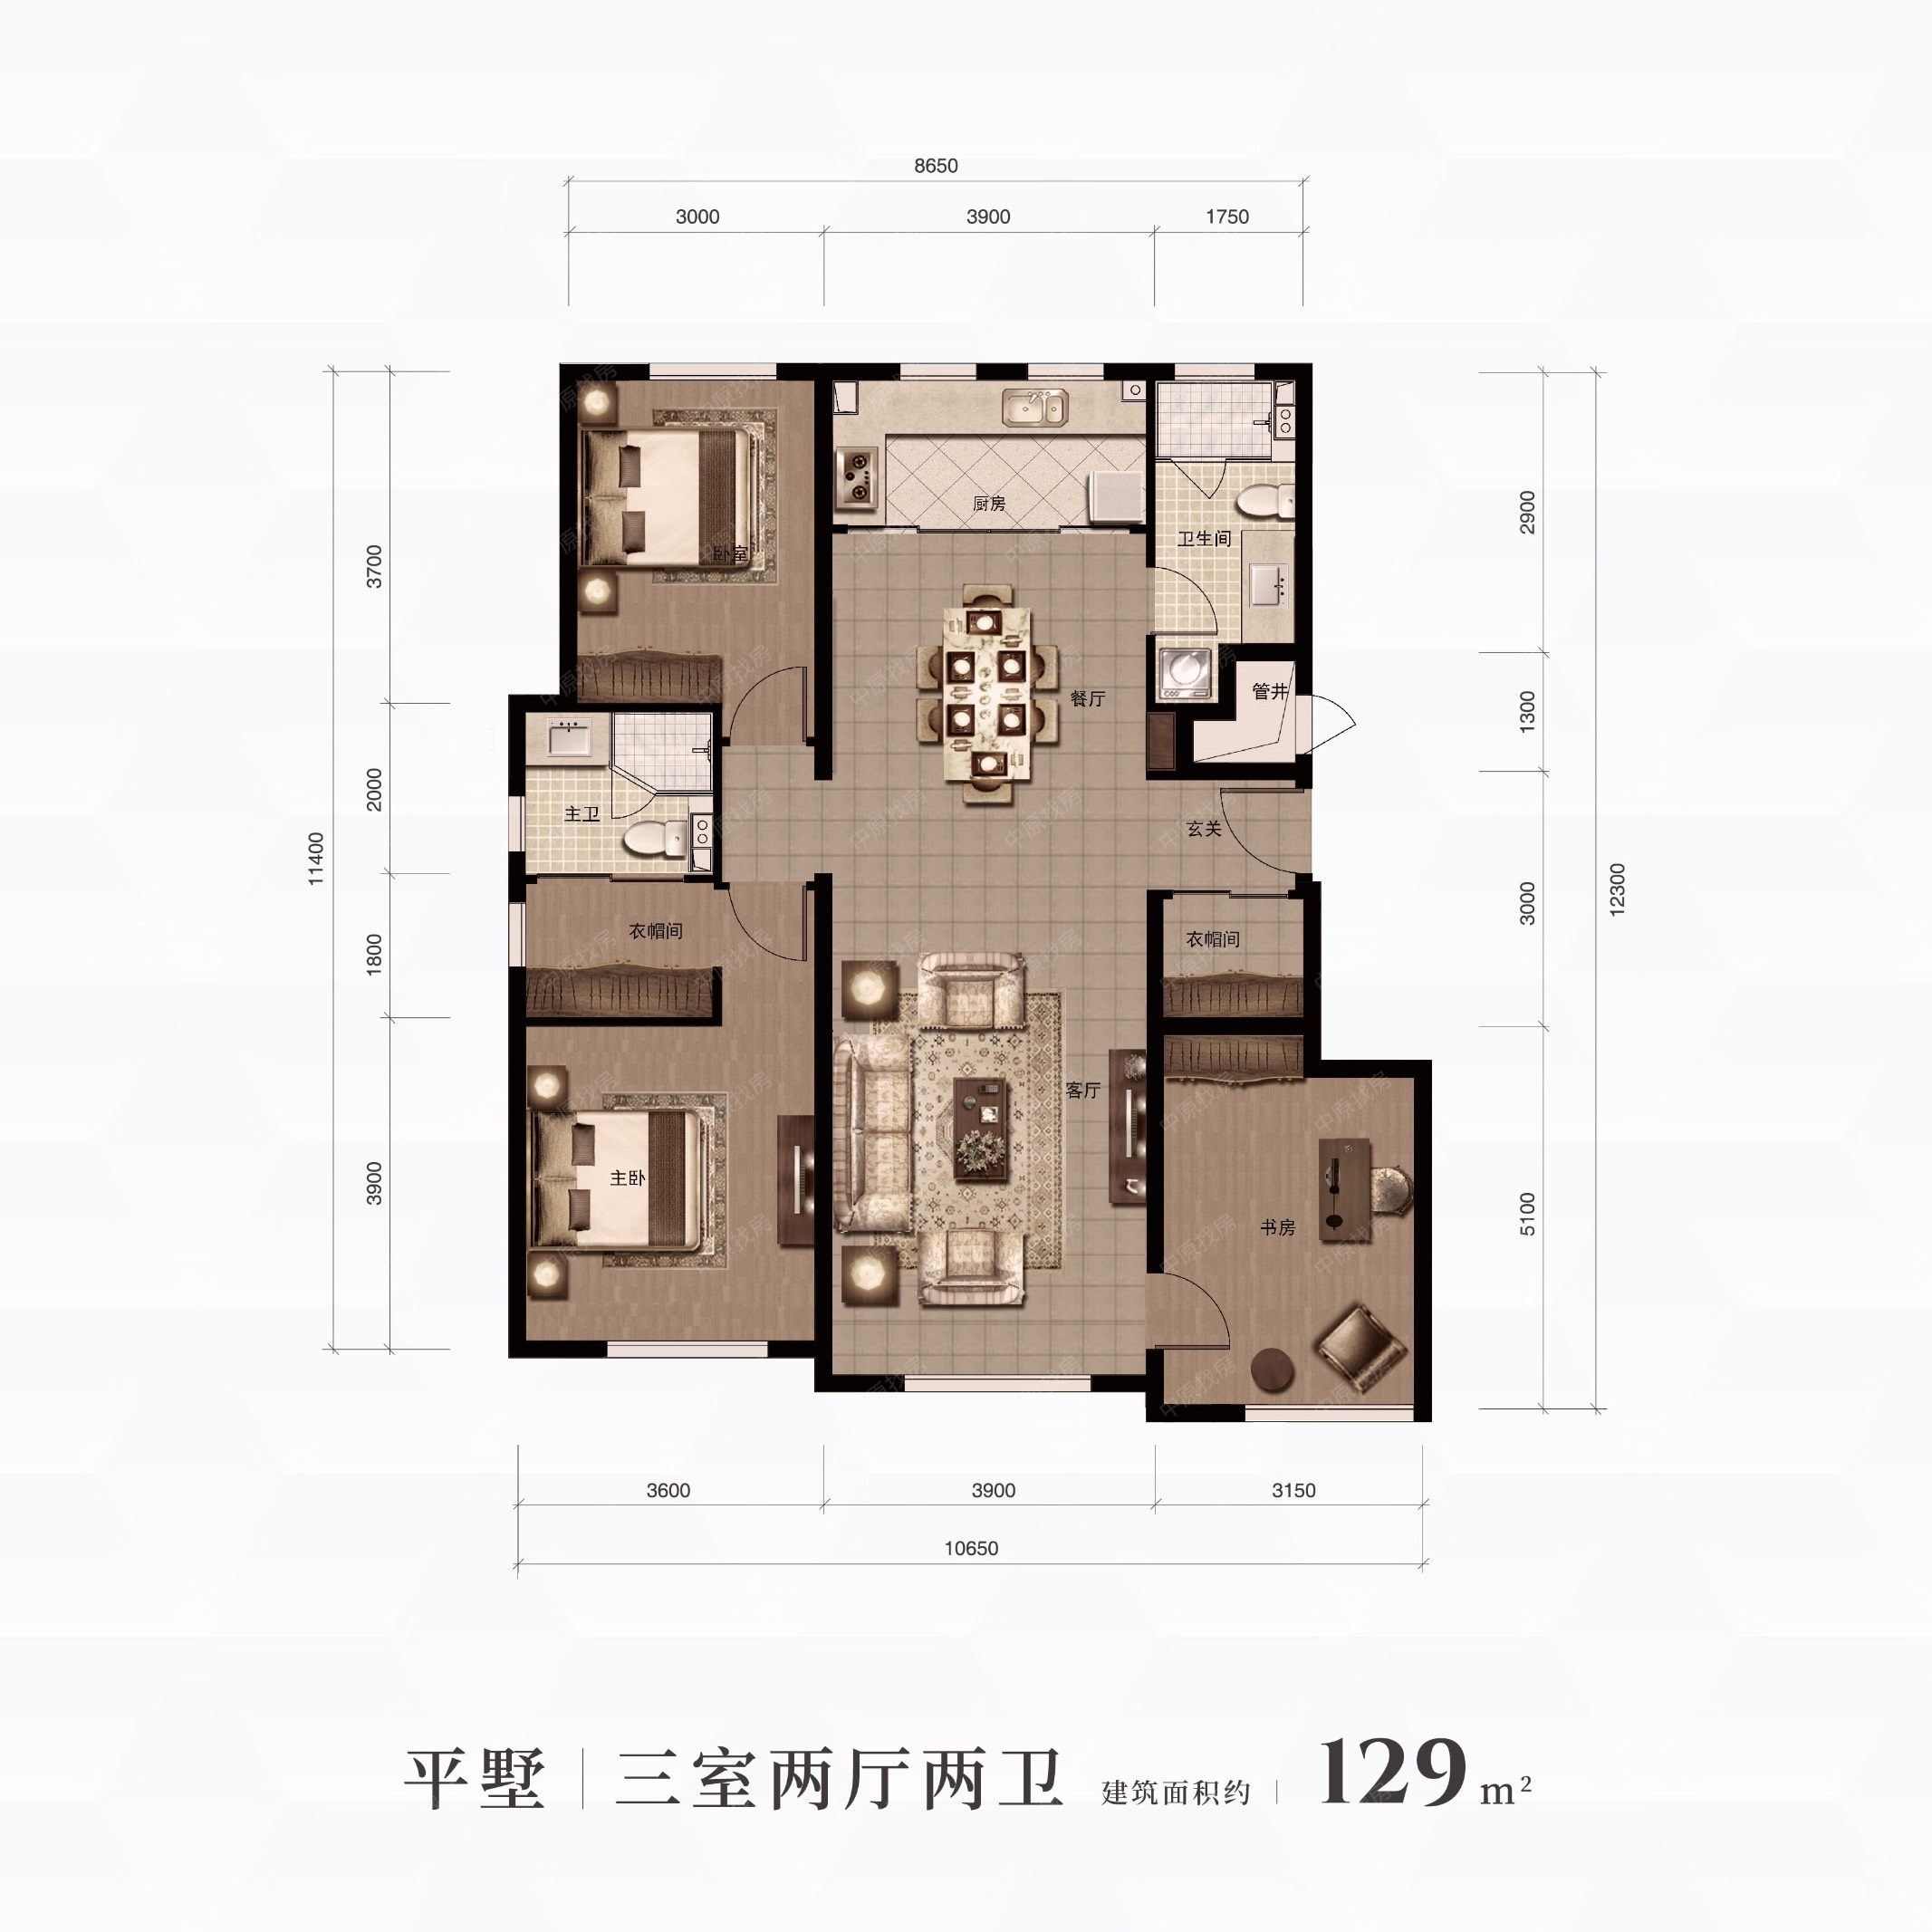 新房 融创城 户型图   平墅129平米 查看原图 3室2厅2卫1厨 居